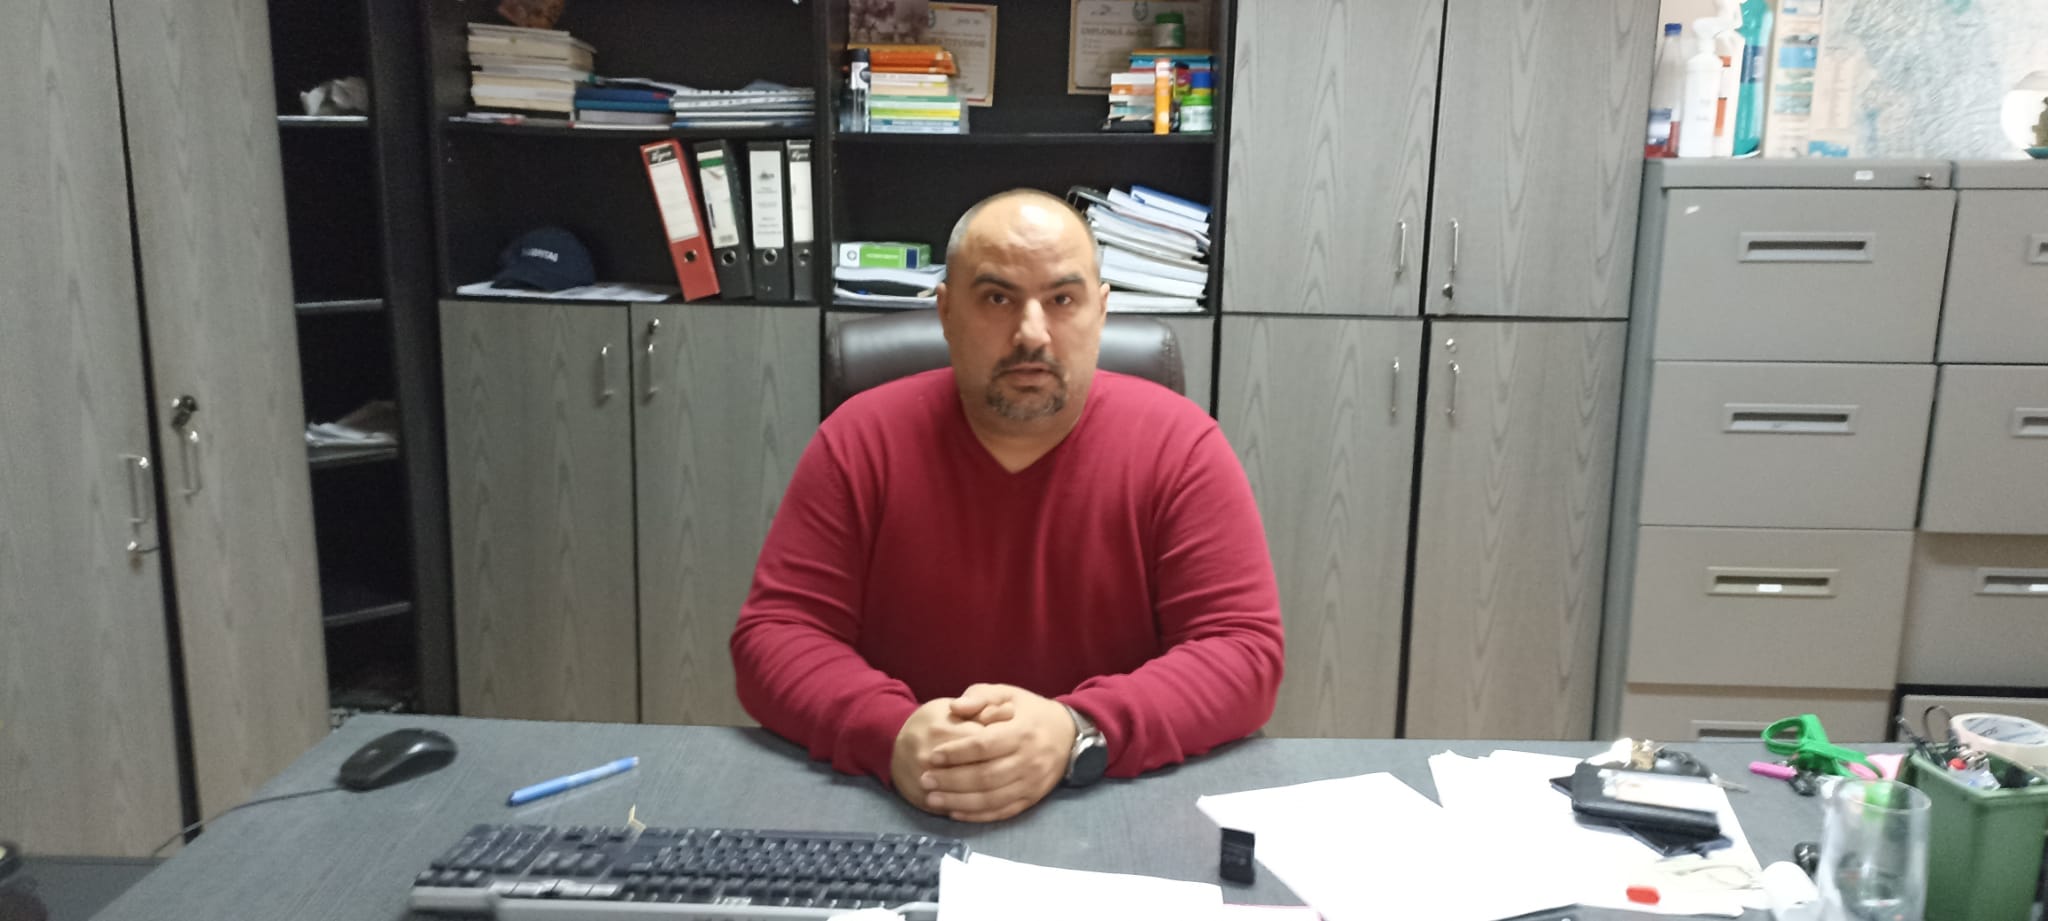 Piatra-Neamț: 9 asistați social au ajutorul suspendat pentru că nu și-au făcut orele de muncă